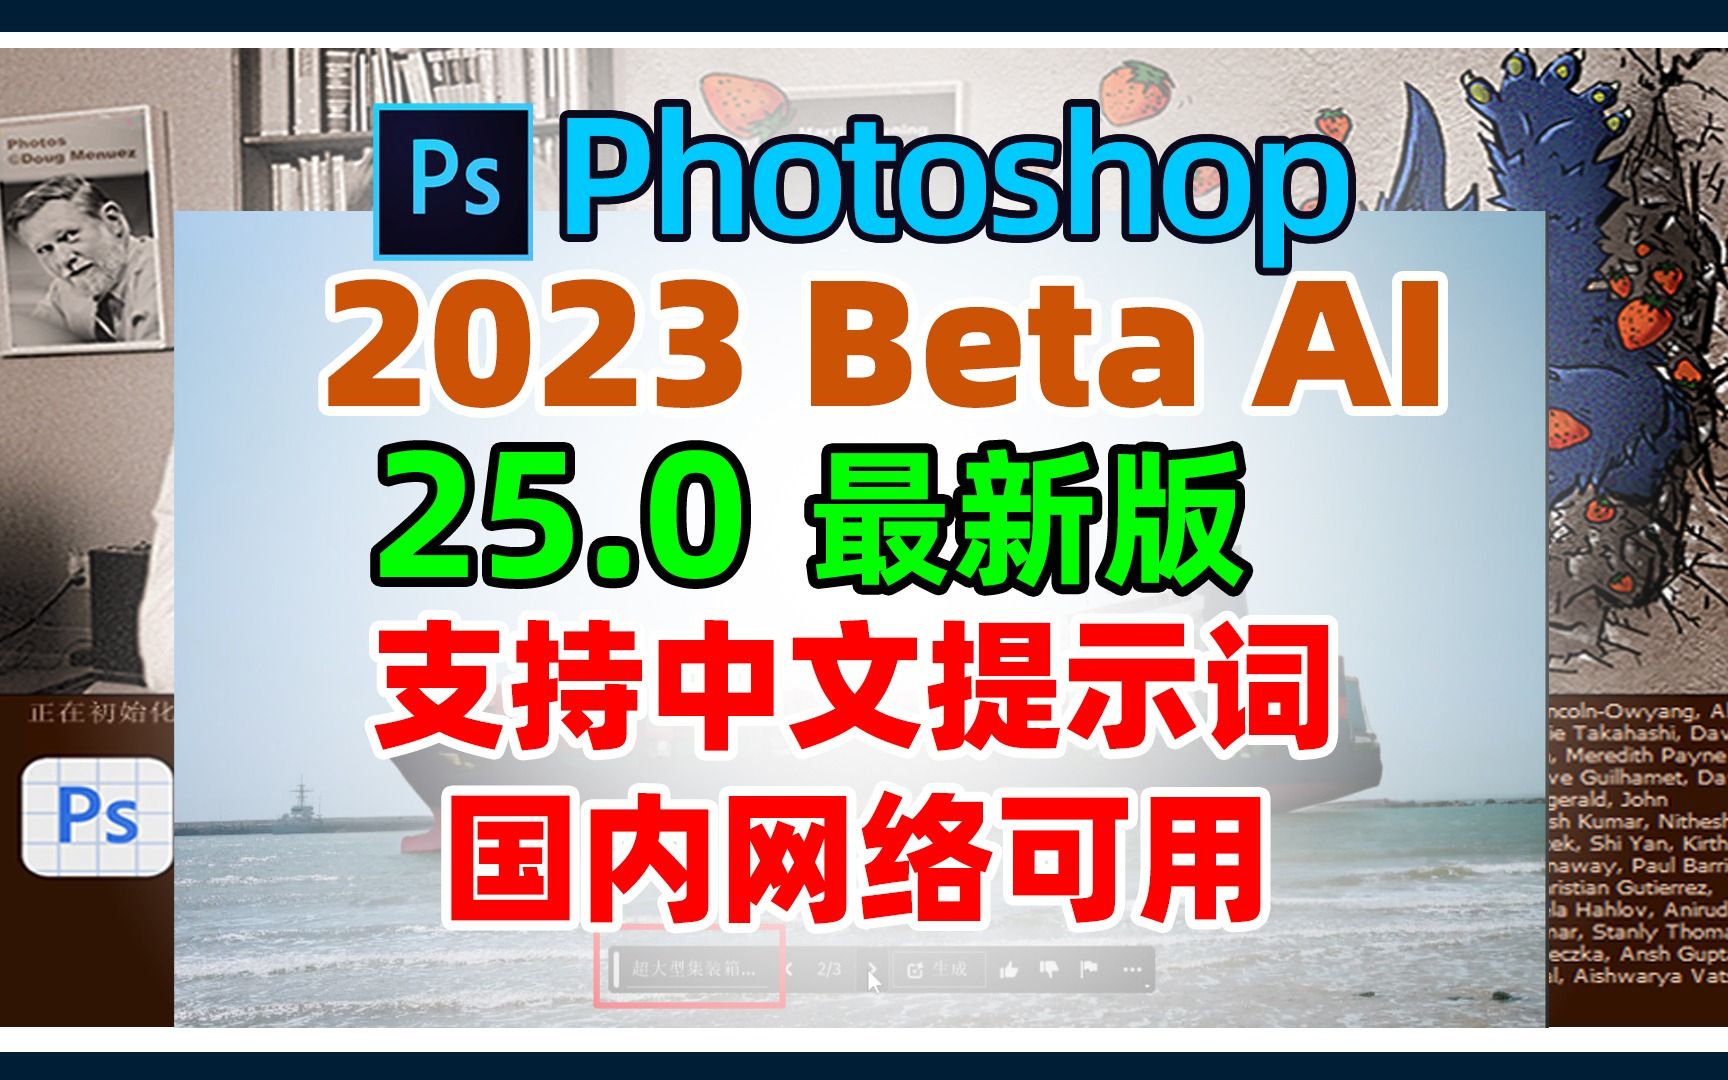 ps2023beta更新到25.0， ai绘画，创成式填充支持中文提示词，不需要魔法就能使用了。